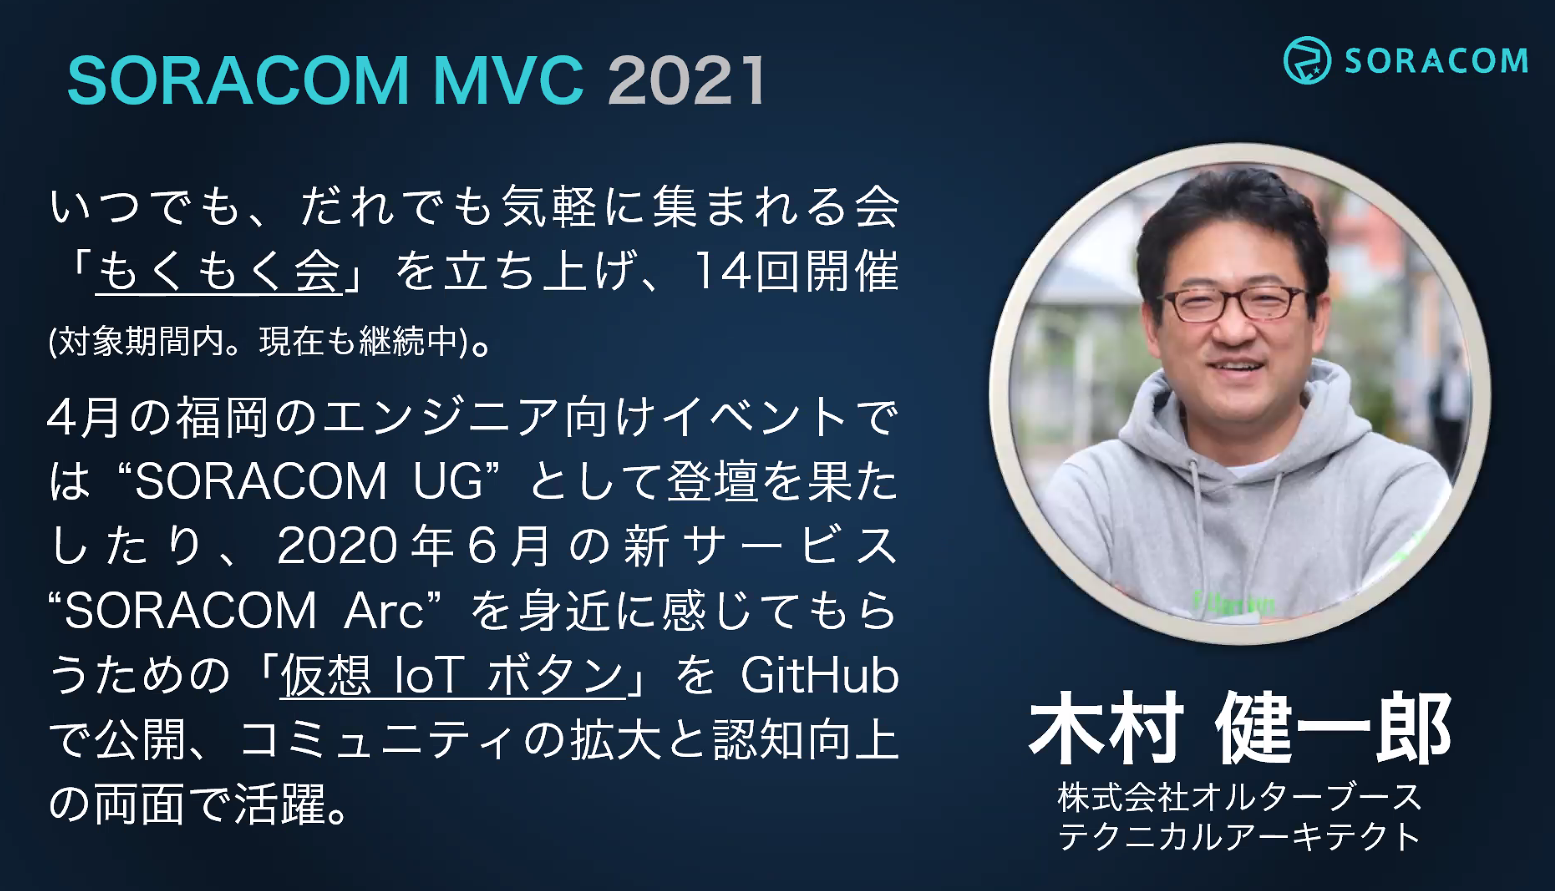 弊社テクニカルアーキテクトの木村健一郎が SORACOM MVC 2021に選出されました